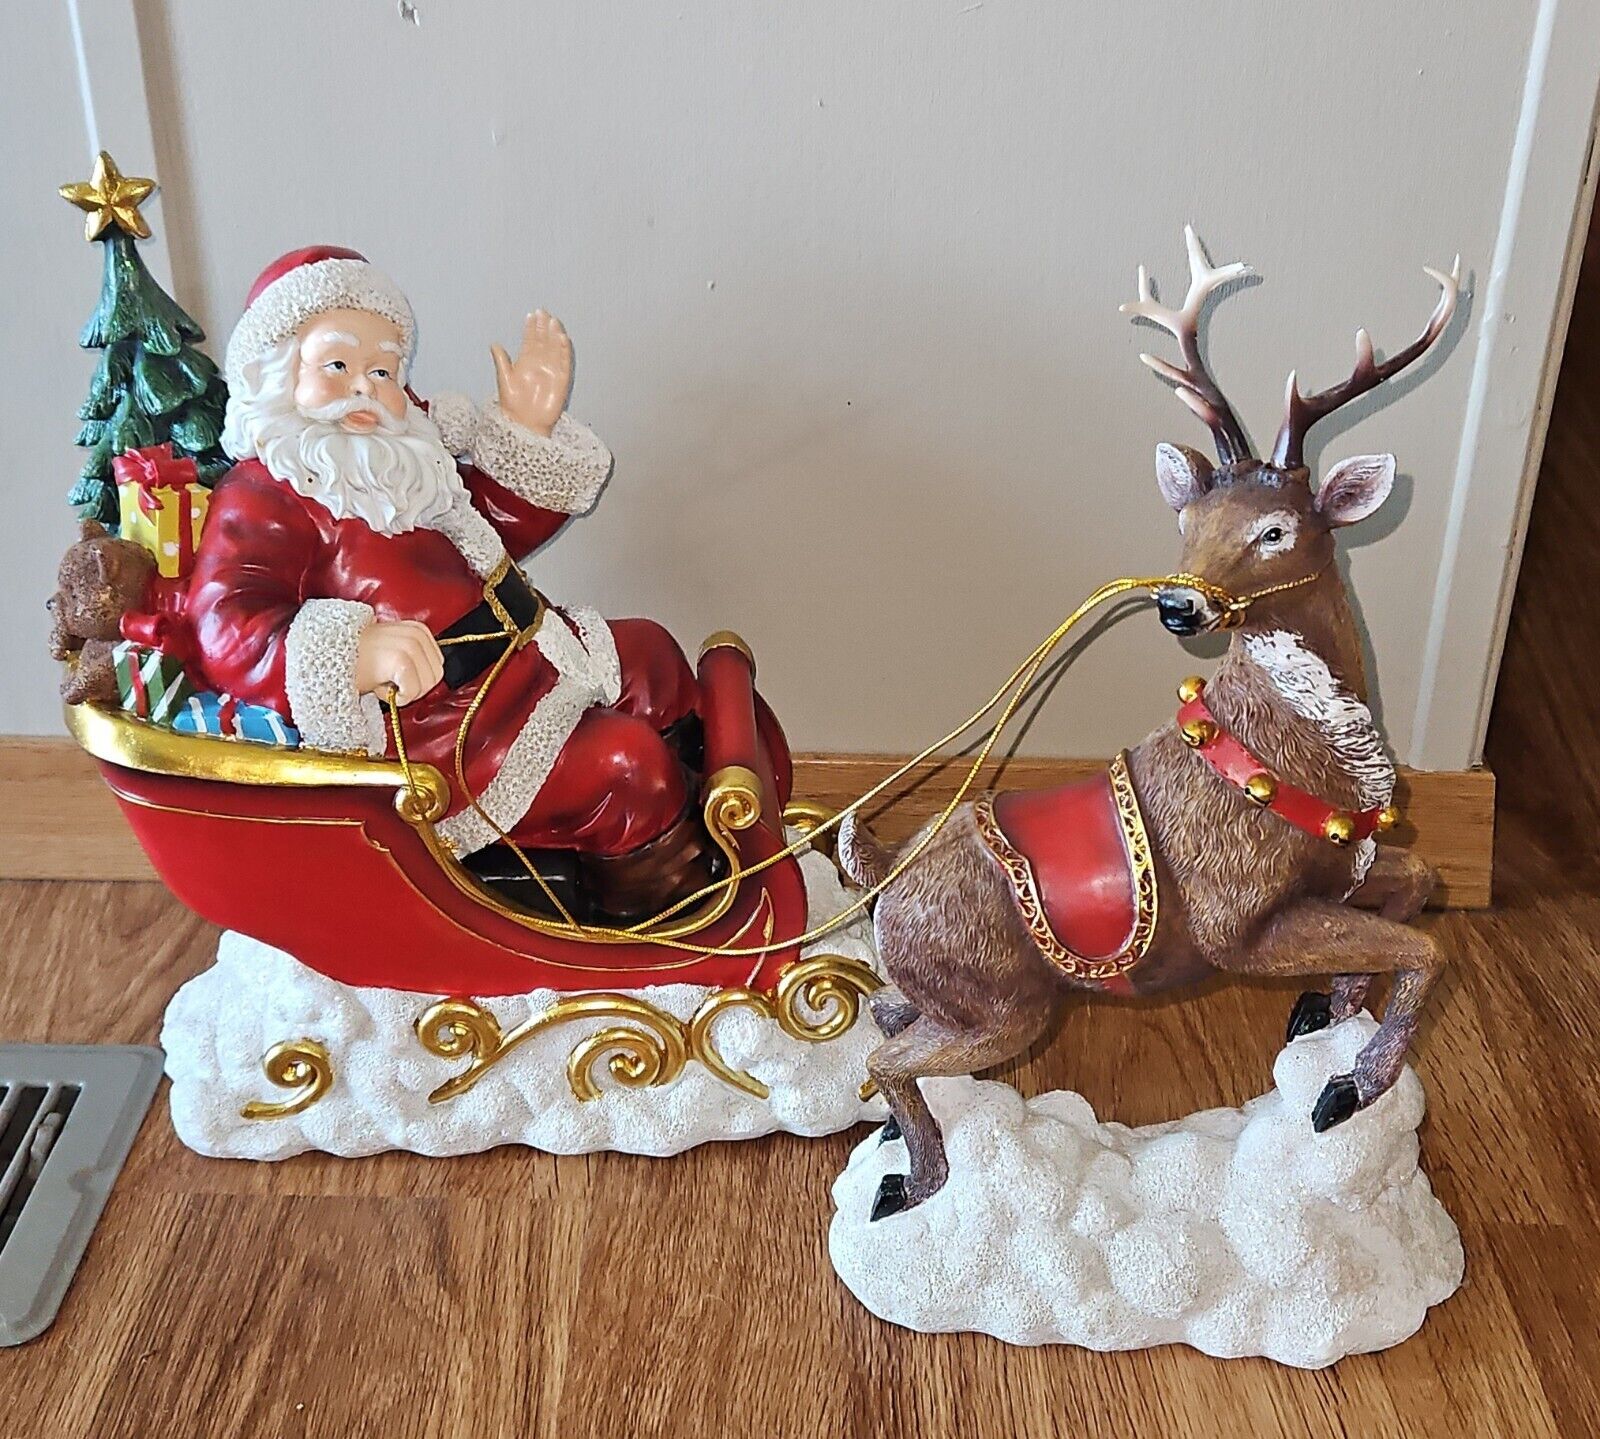 Santa in Sleigh with Reindeer by Valerie